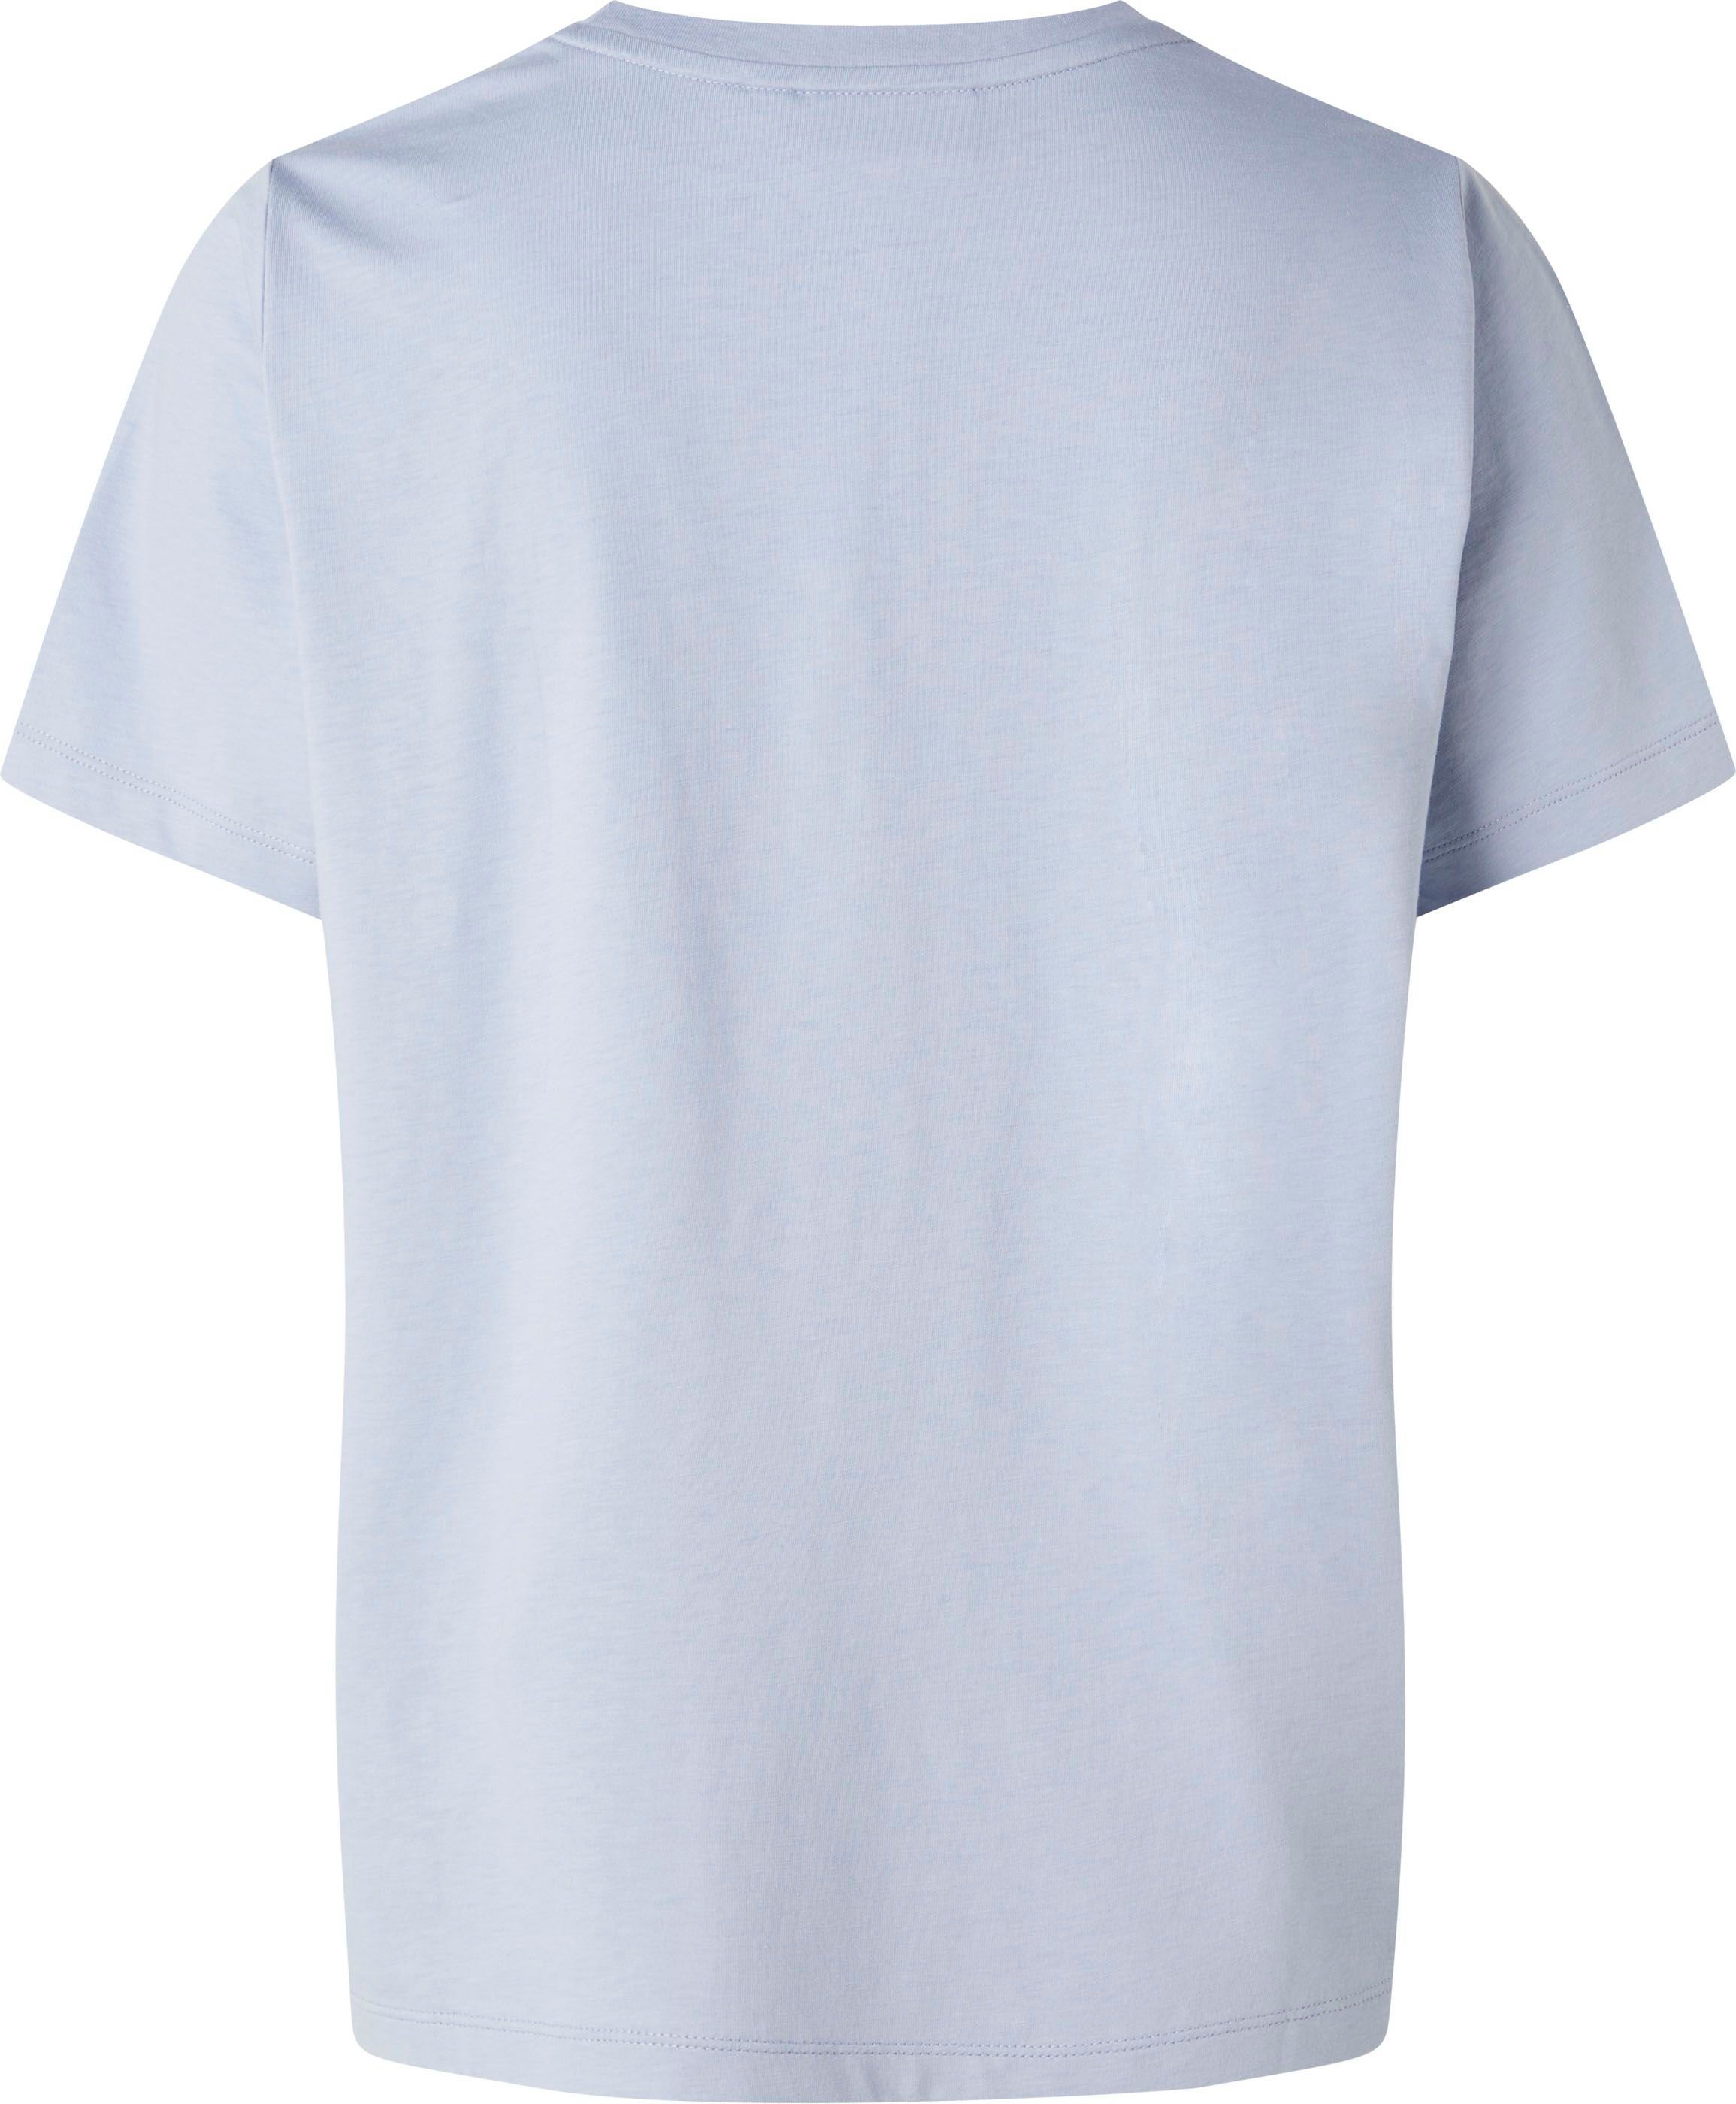 Baumwolle T-SHIRT hellblau reiner T-Shirt Calvin aus MICRO Klein LOGO